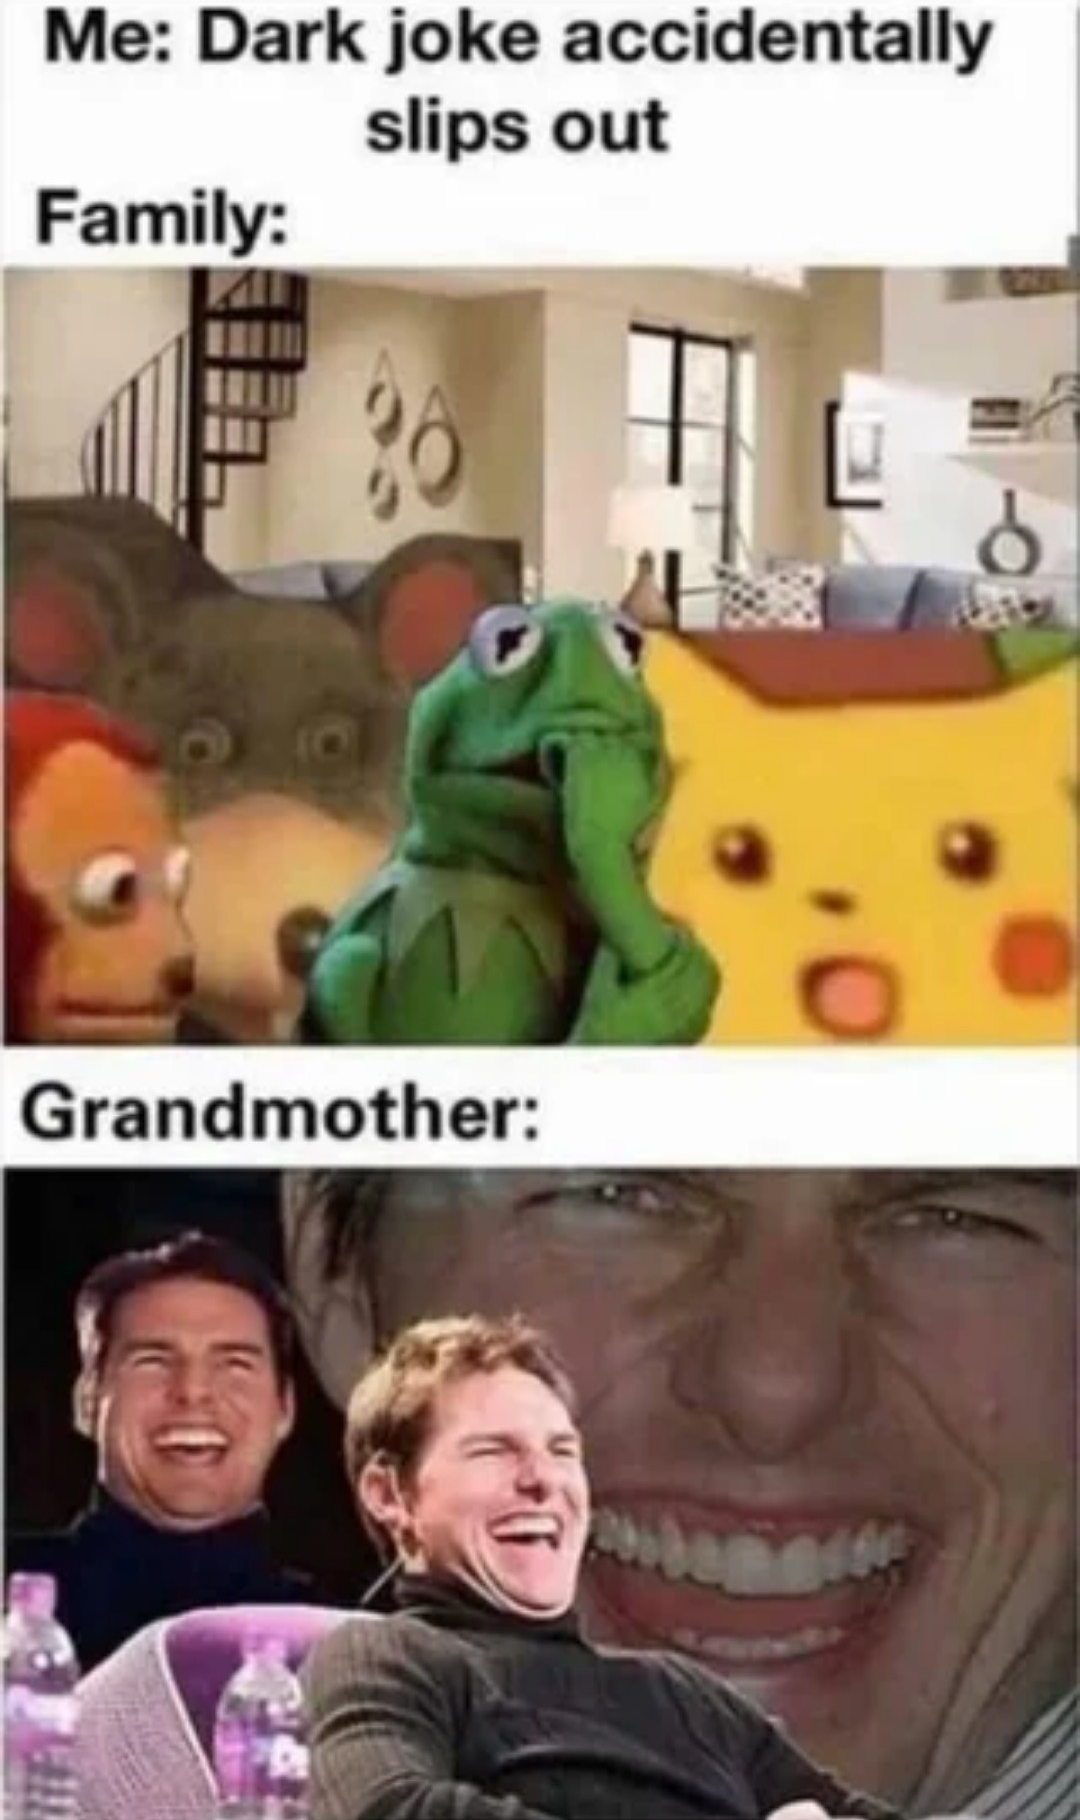 funny memes and pics - dark joke meme - Me Dark joke accidentally slips out Family 36 Grandmother 160